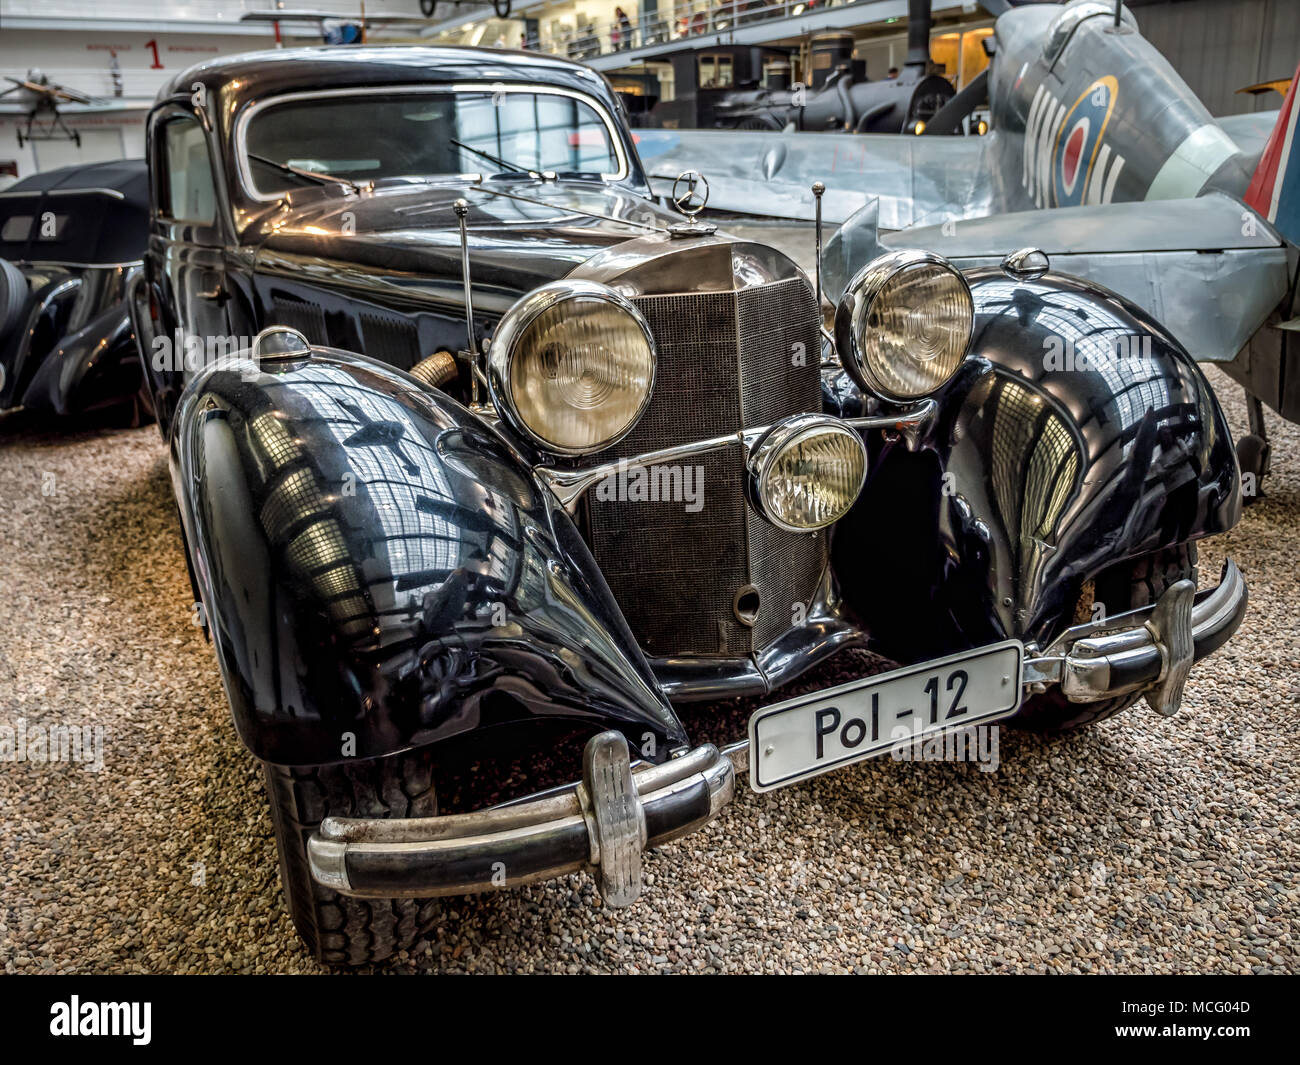 PRAGUE, RÉPUBLIQUE TCHÈQUE - 8 mars 2017 : Oldtimer Benz 540 K, à partir de 1939-1942, présenté dans le Musée Technique National de Prague Banque D'Images